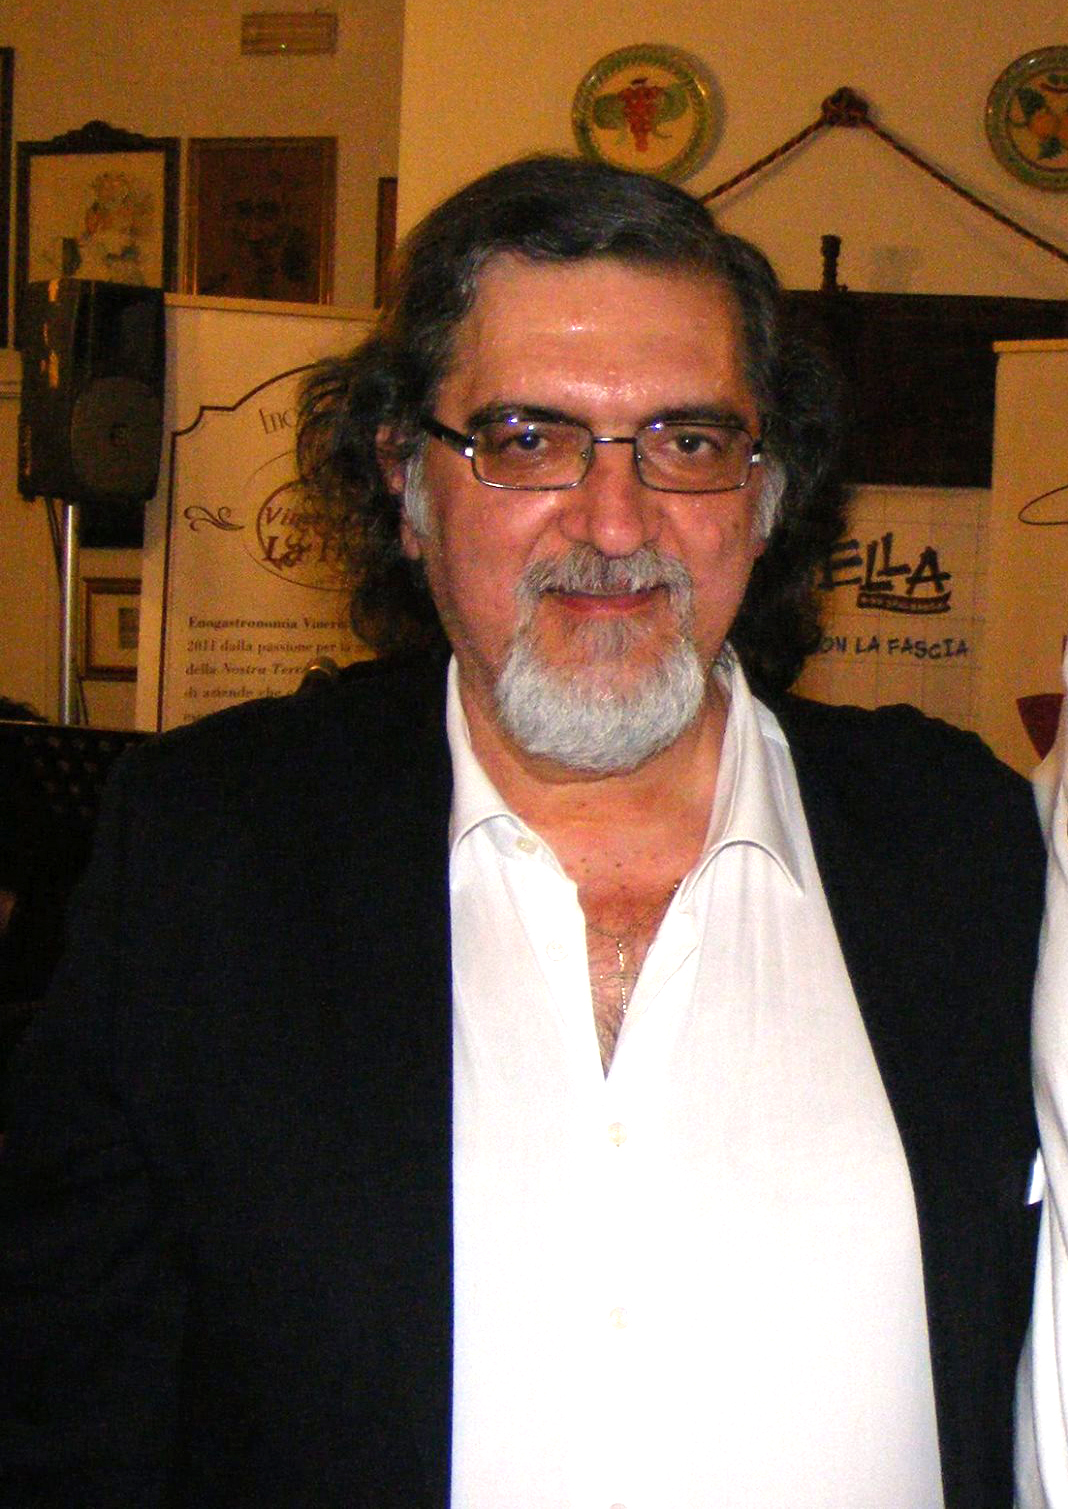 Luigi Farina